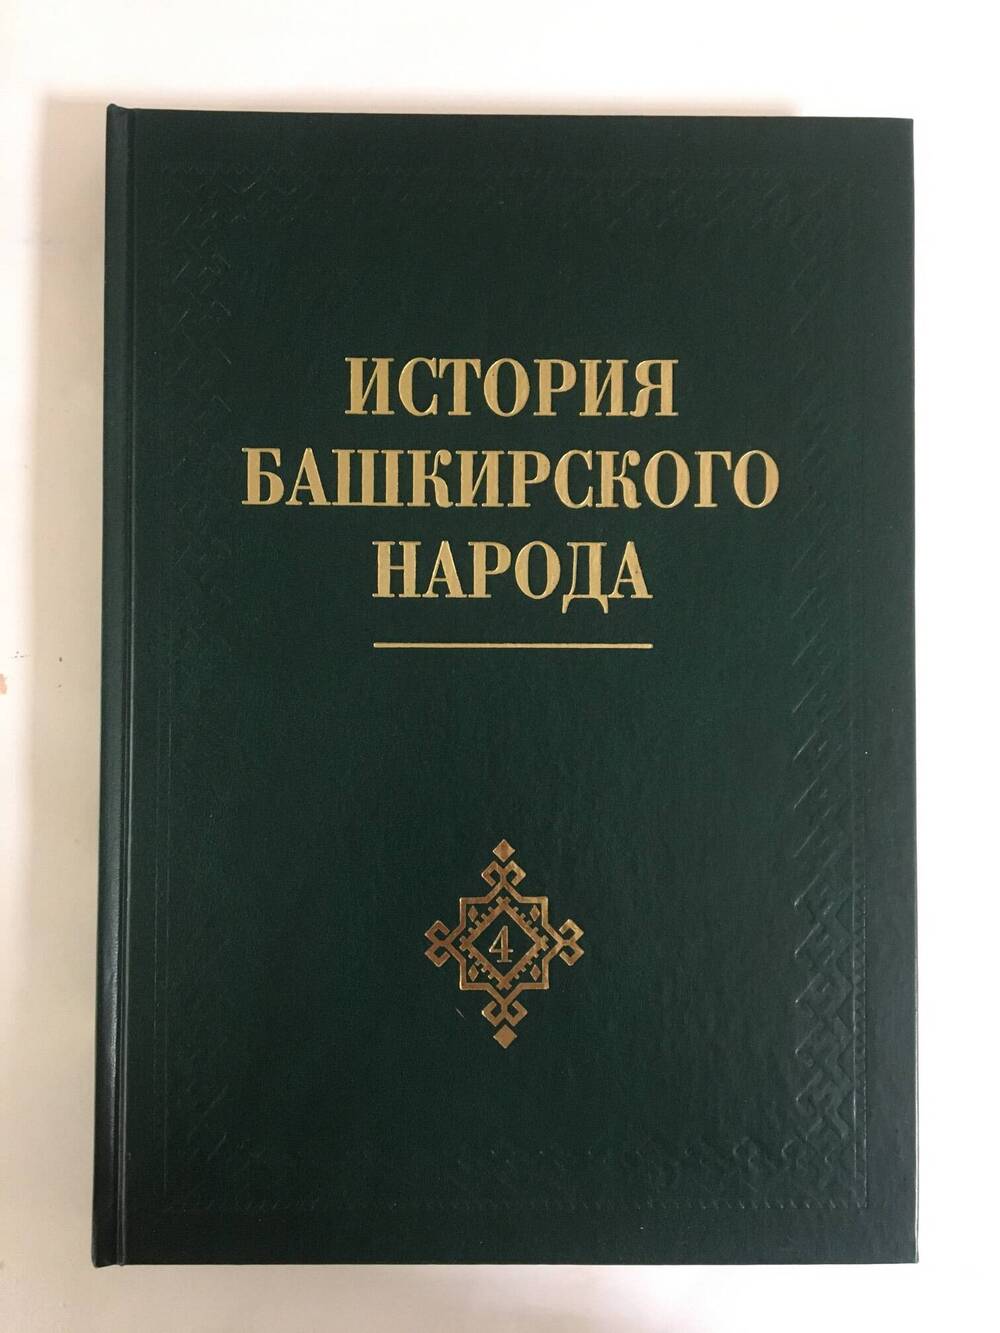 Книга
«История башкирского народа».